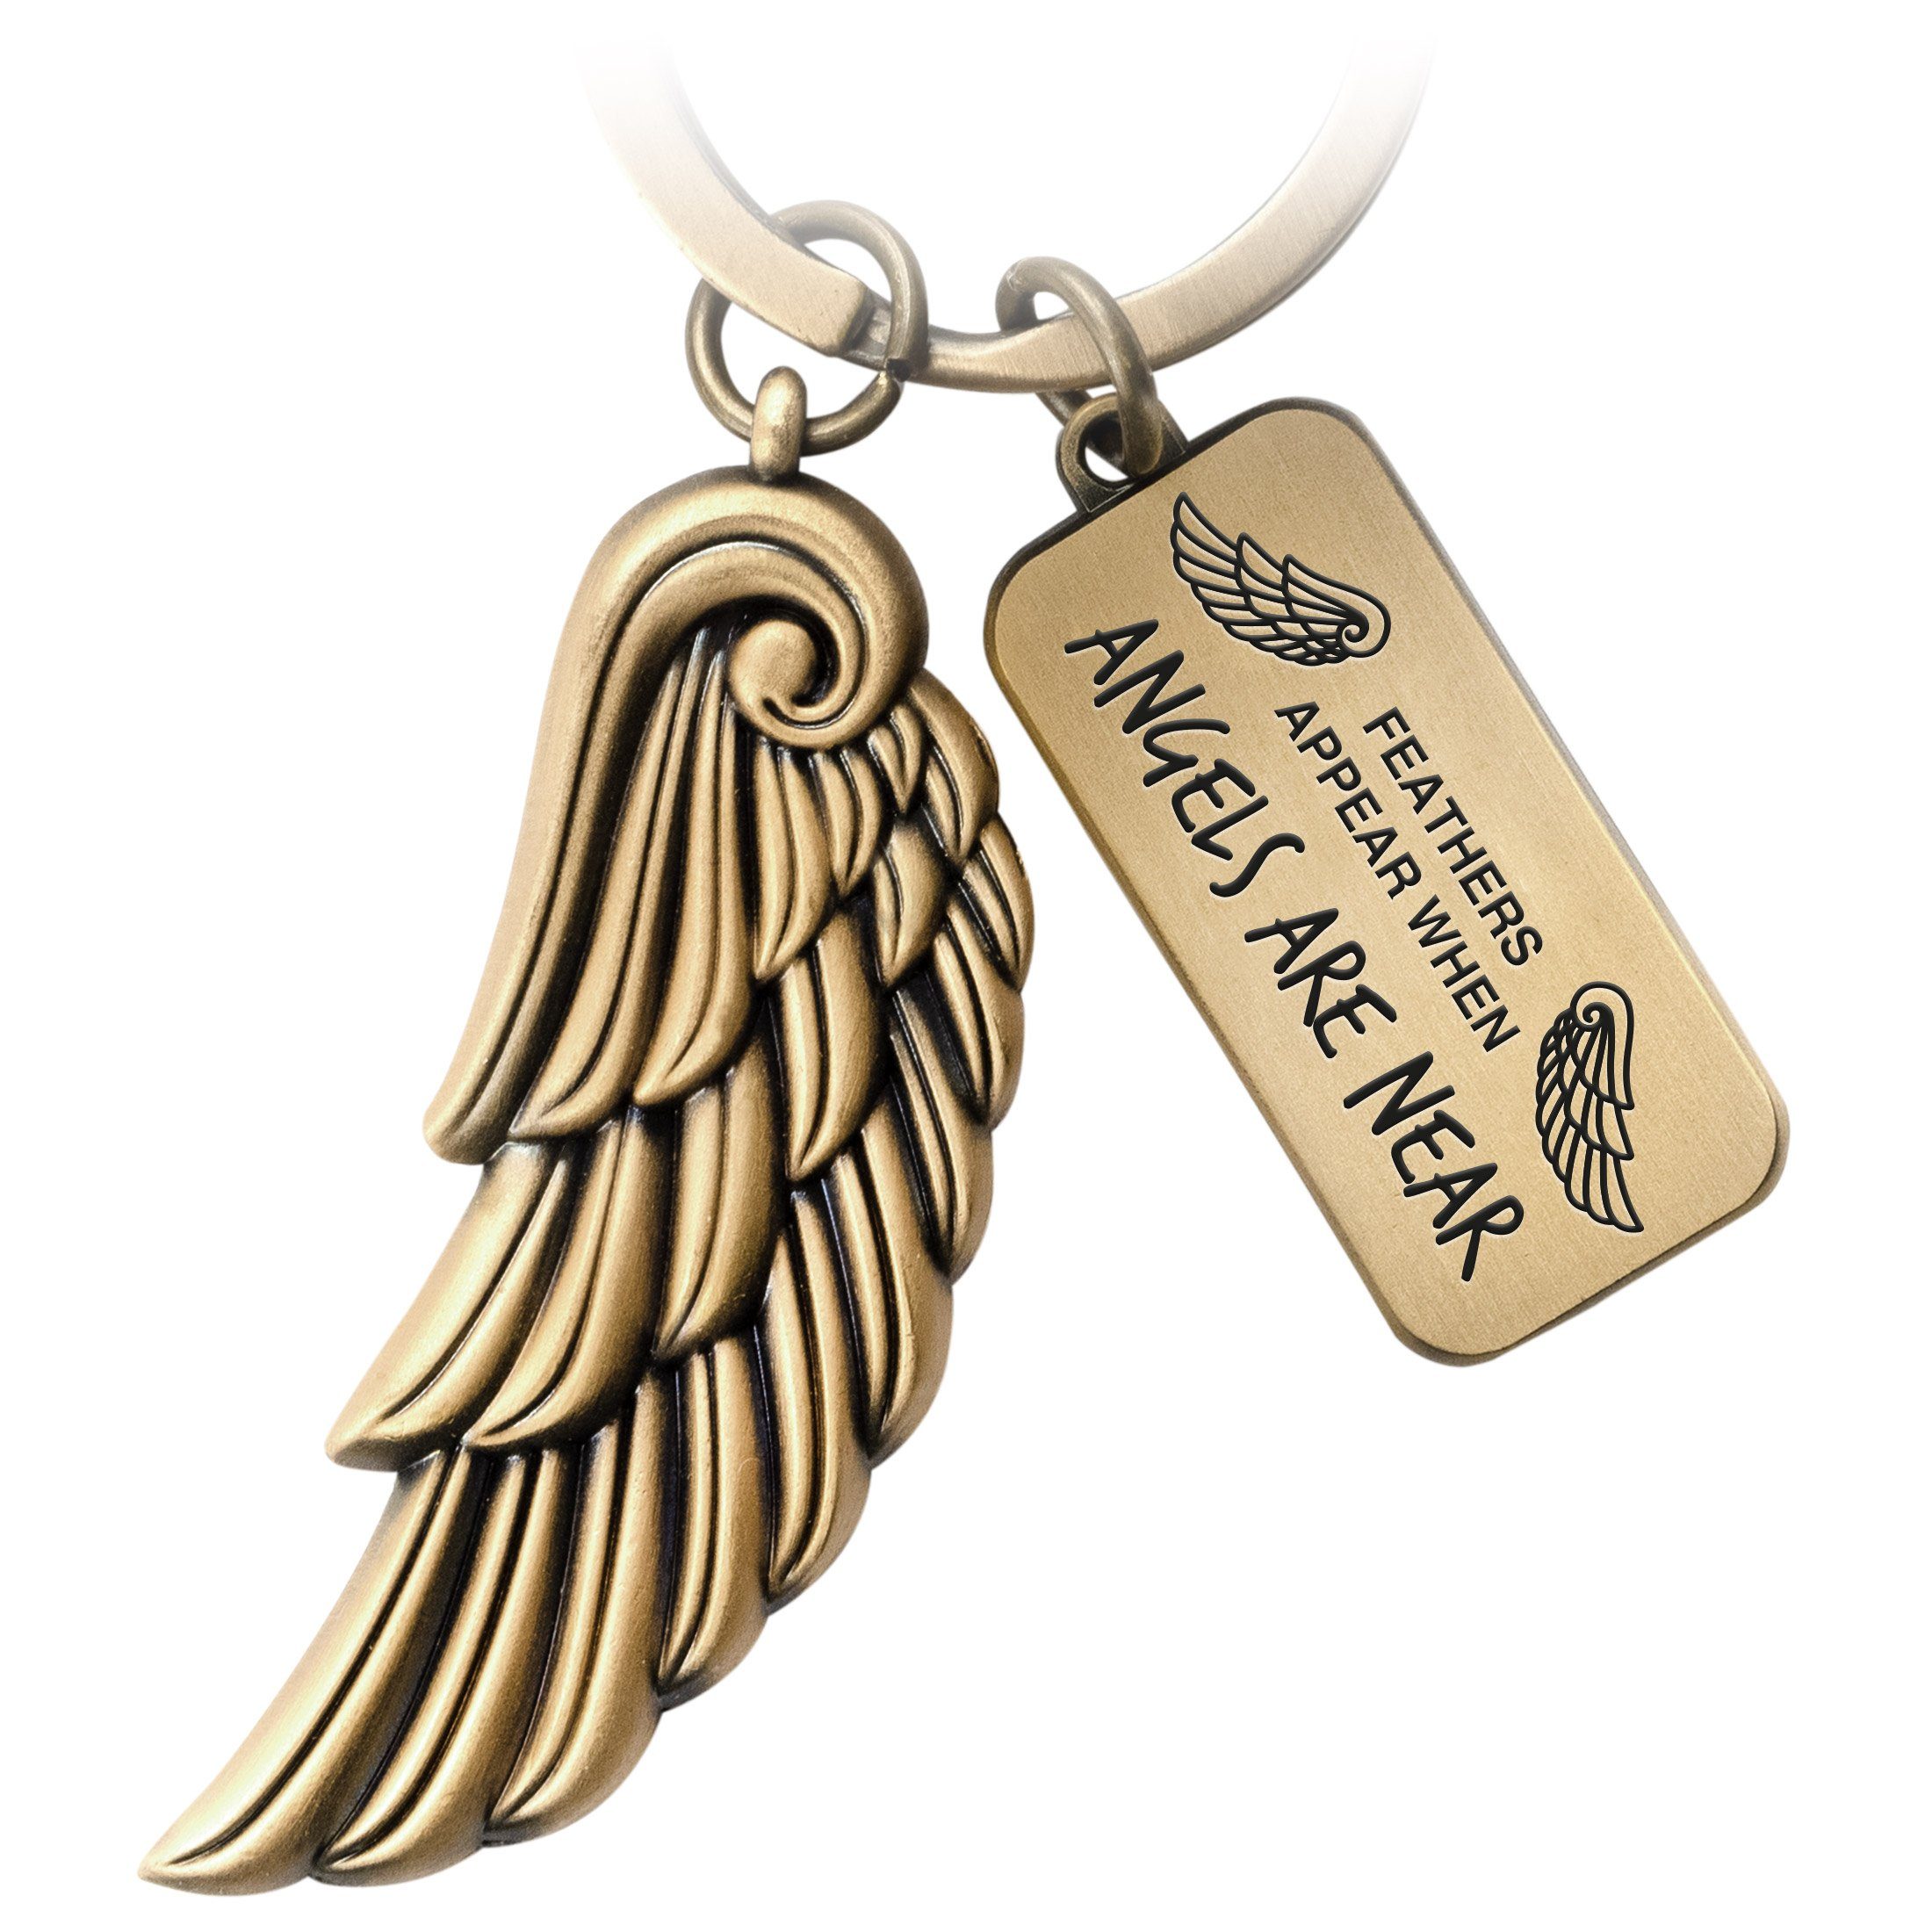 - Geschenk Antique - Schlüsselanhänger mit Angels Schutzengel Engelsflügel Angel FABACH Gravur Near Bronze Are